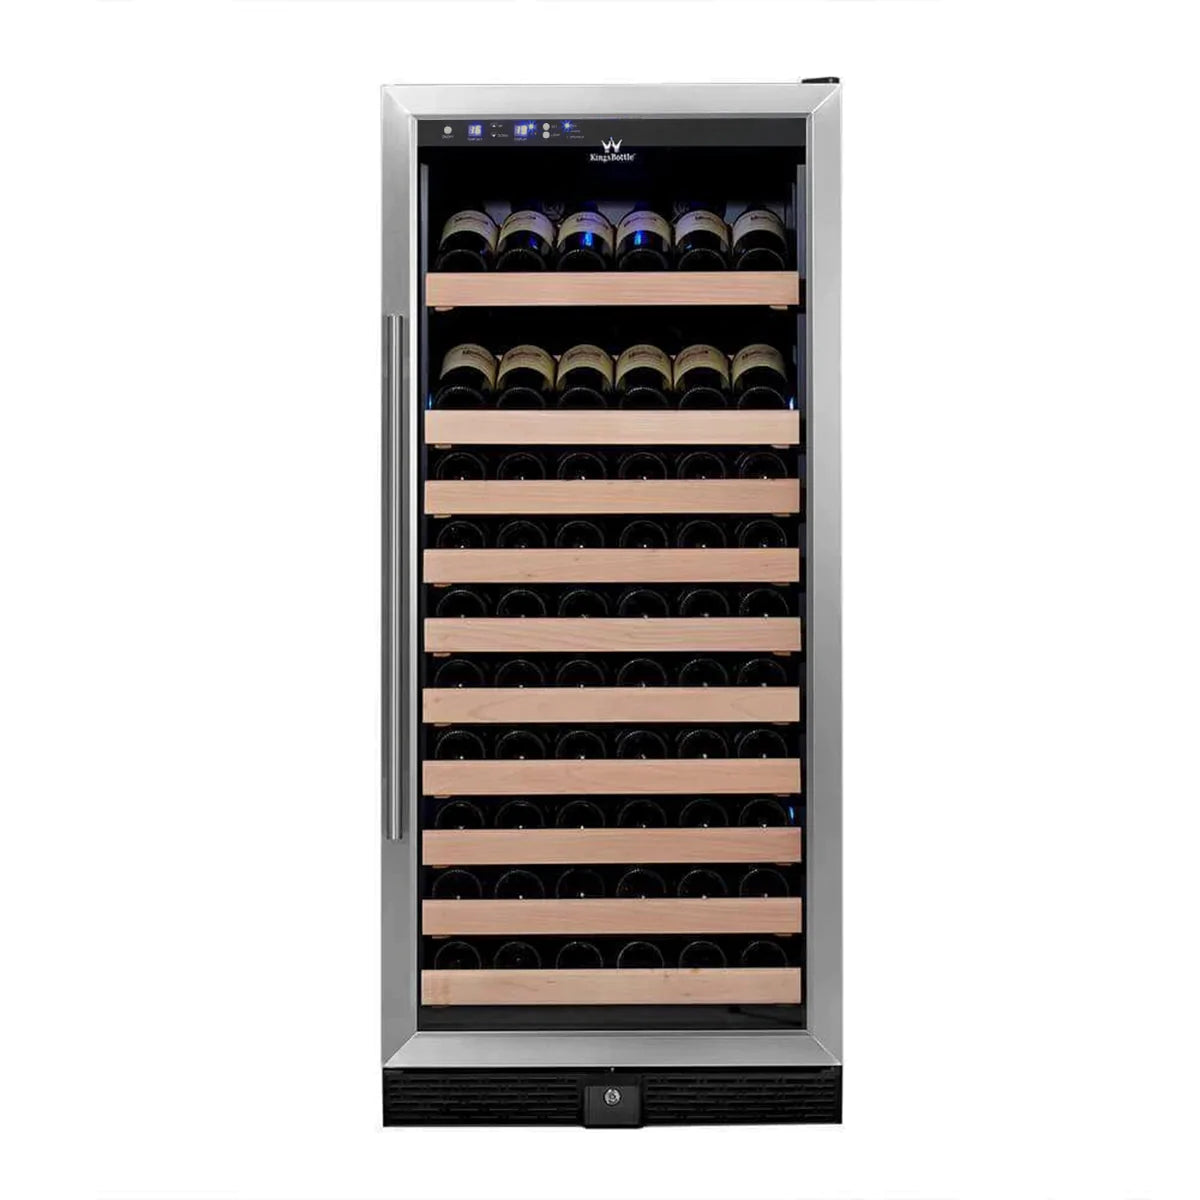 "Kingsbottle" 100 Bottle Kitchen Wine Refrigerator Freestanding : KBU100WX-SS RHH